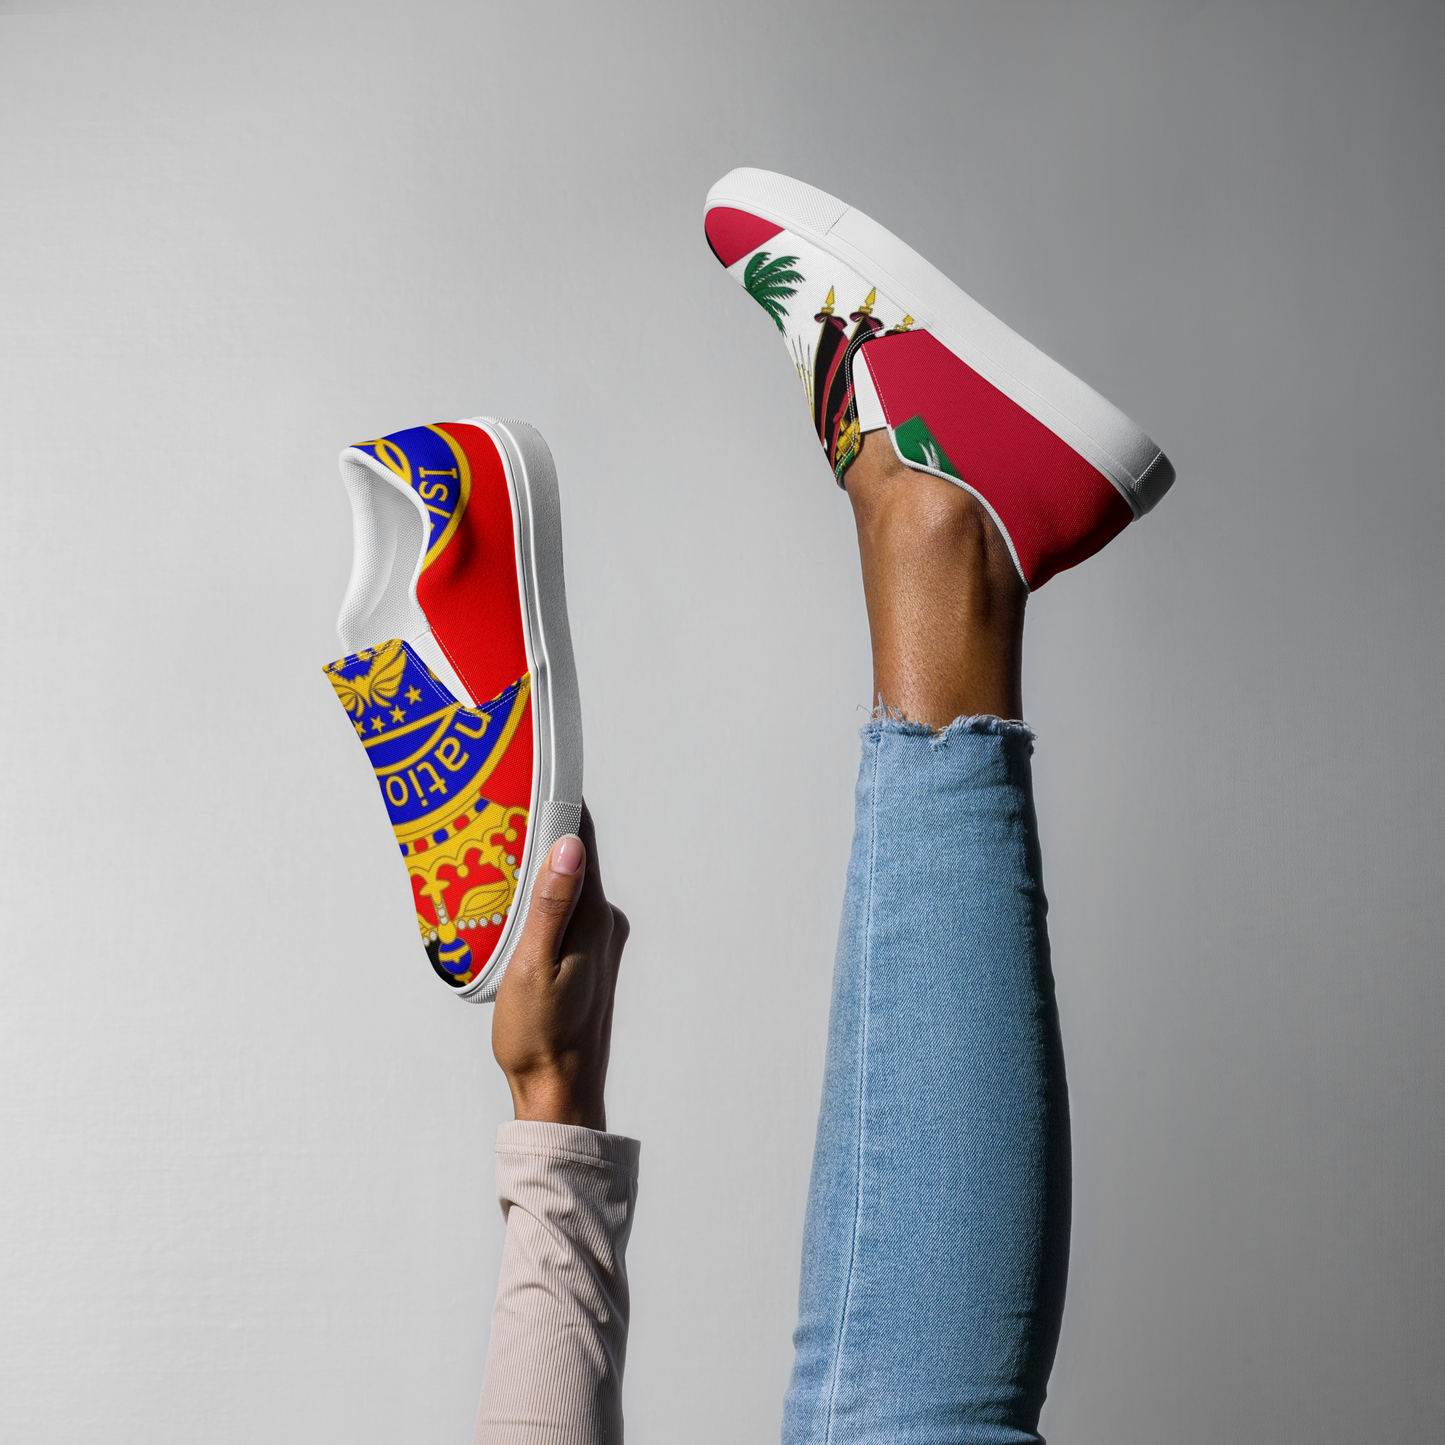 Islandrich Women’s slip-on canvas shoes